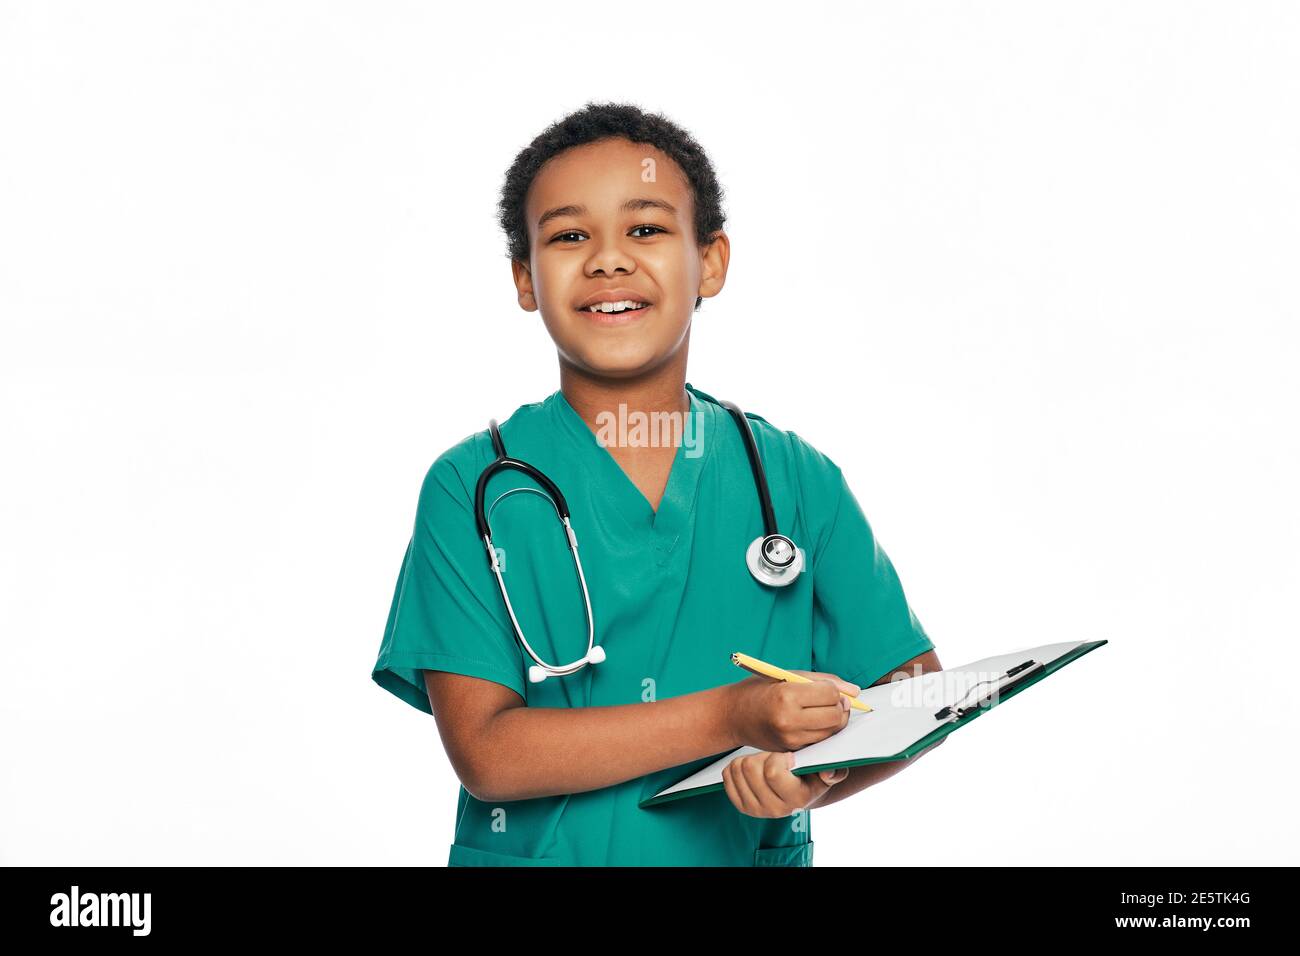 Afroamerikanischer Junge schreibt Gesundheitsbehandlung auf einem medizinischen Klemmbrett. Kind spielt Arzt, zukünftiger Beruf. Weißer Hintergrund Stockfoto